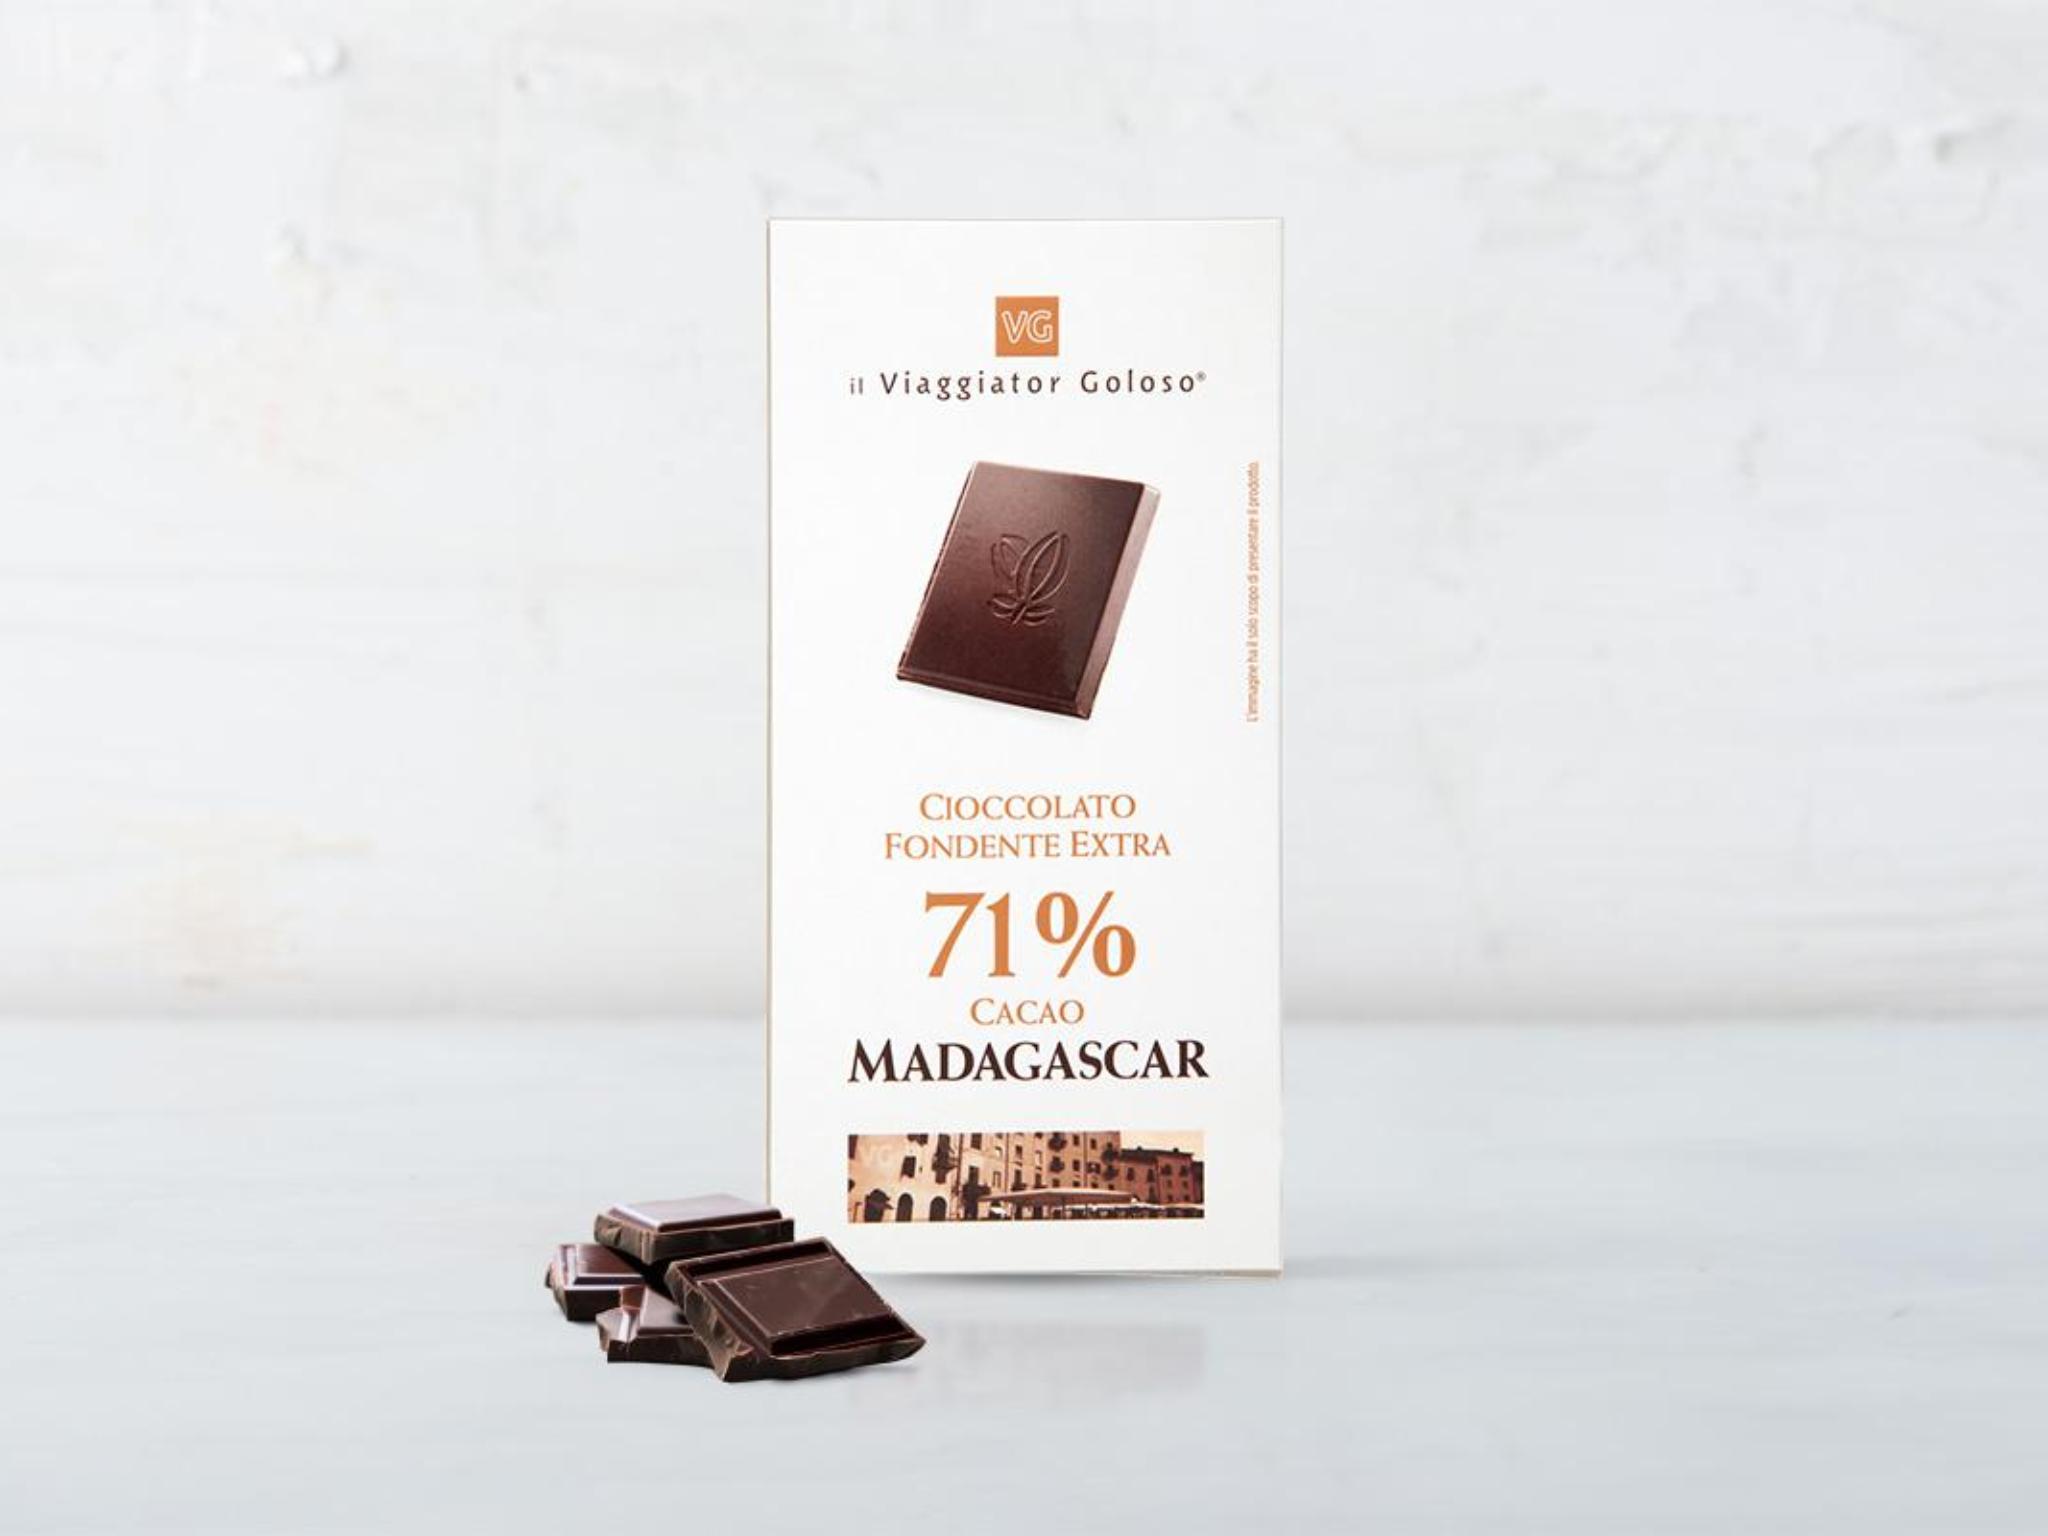 Cioccolato fondente extra Madagascar 71%